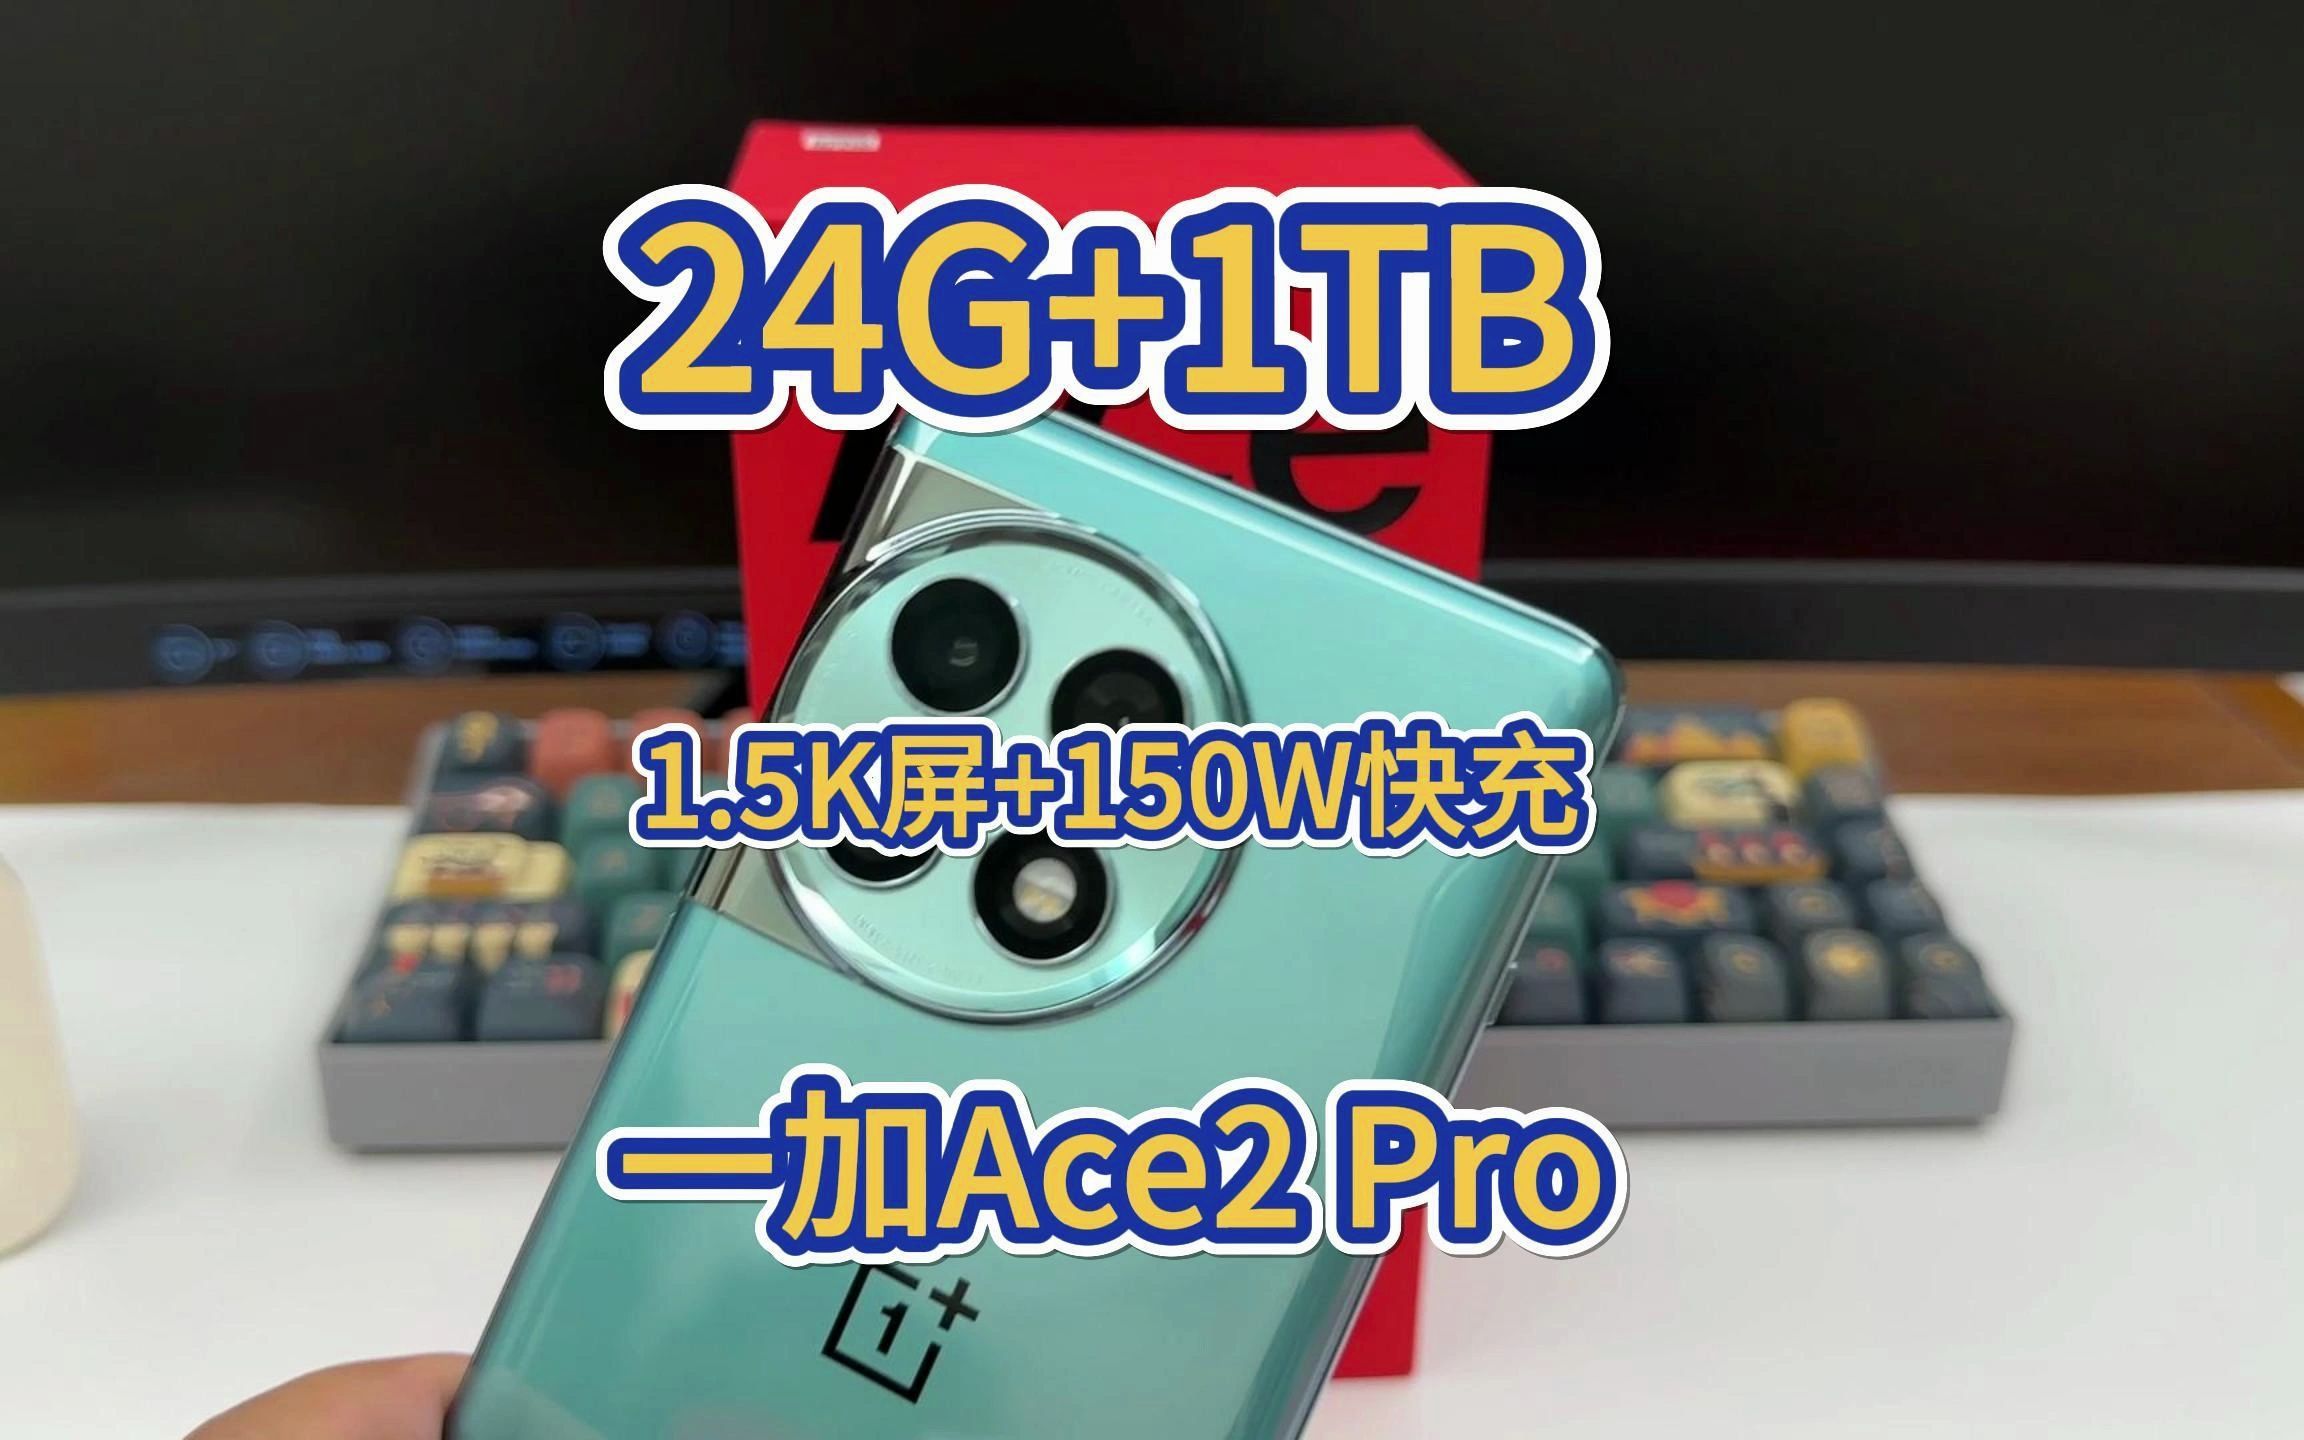 骁龙8Gen2加持 24G内存和1.5K屏幕 一加Ace2 Pro使用体验